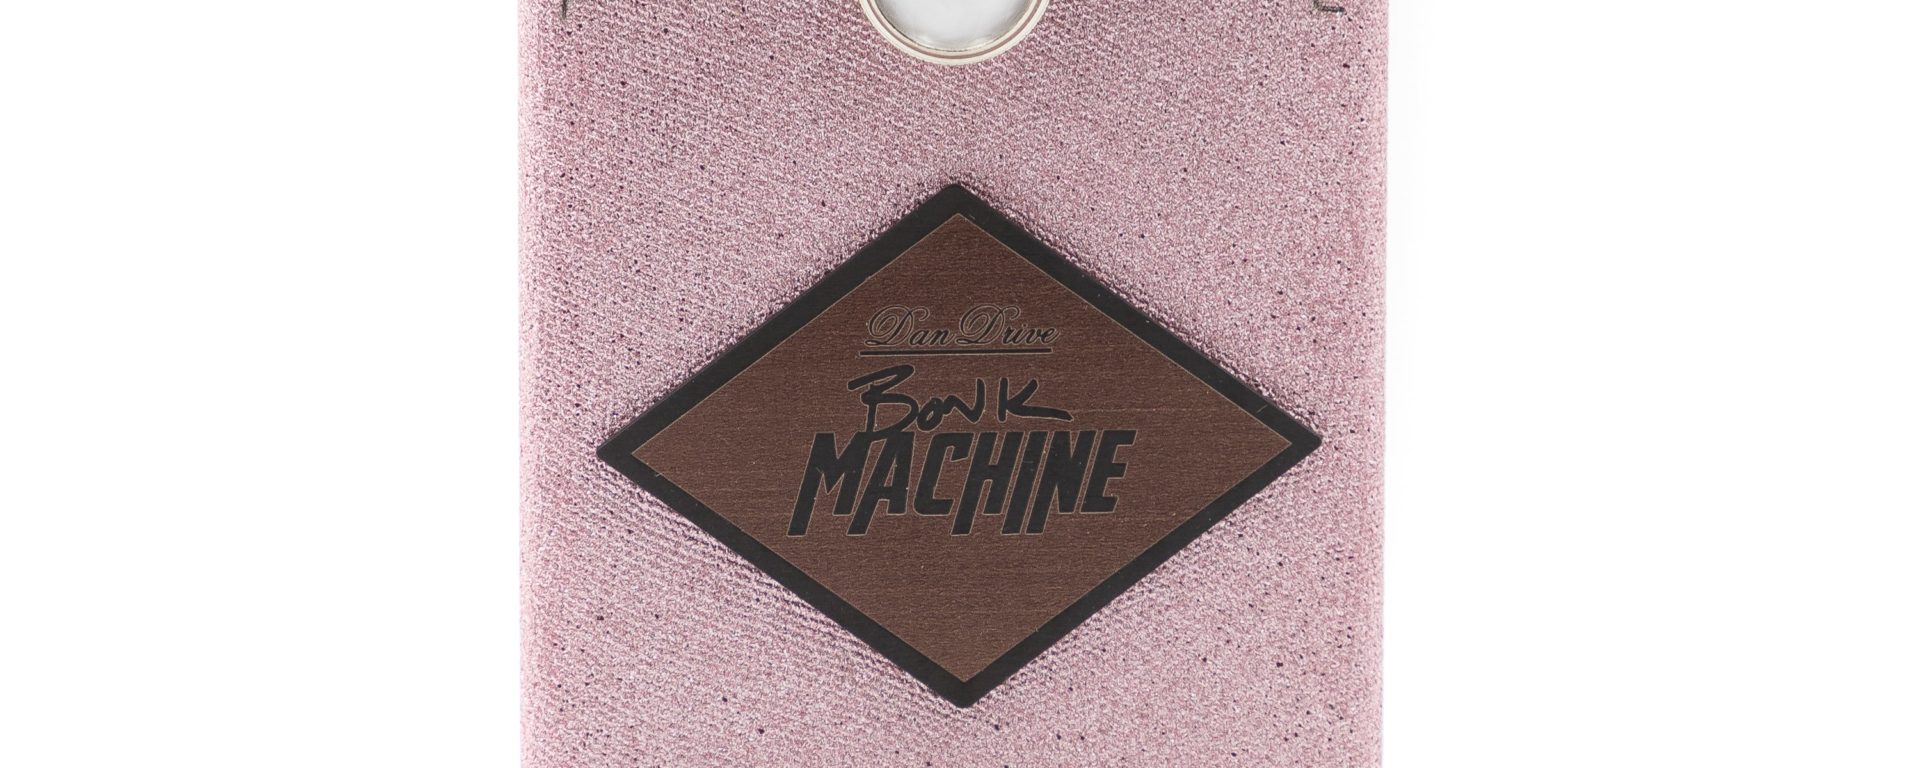 Bonk Machine Pedal